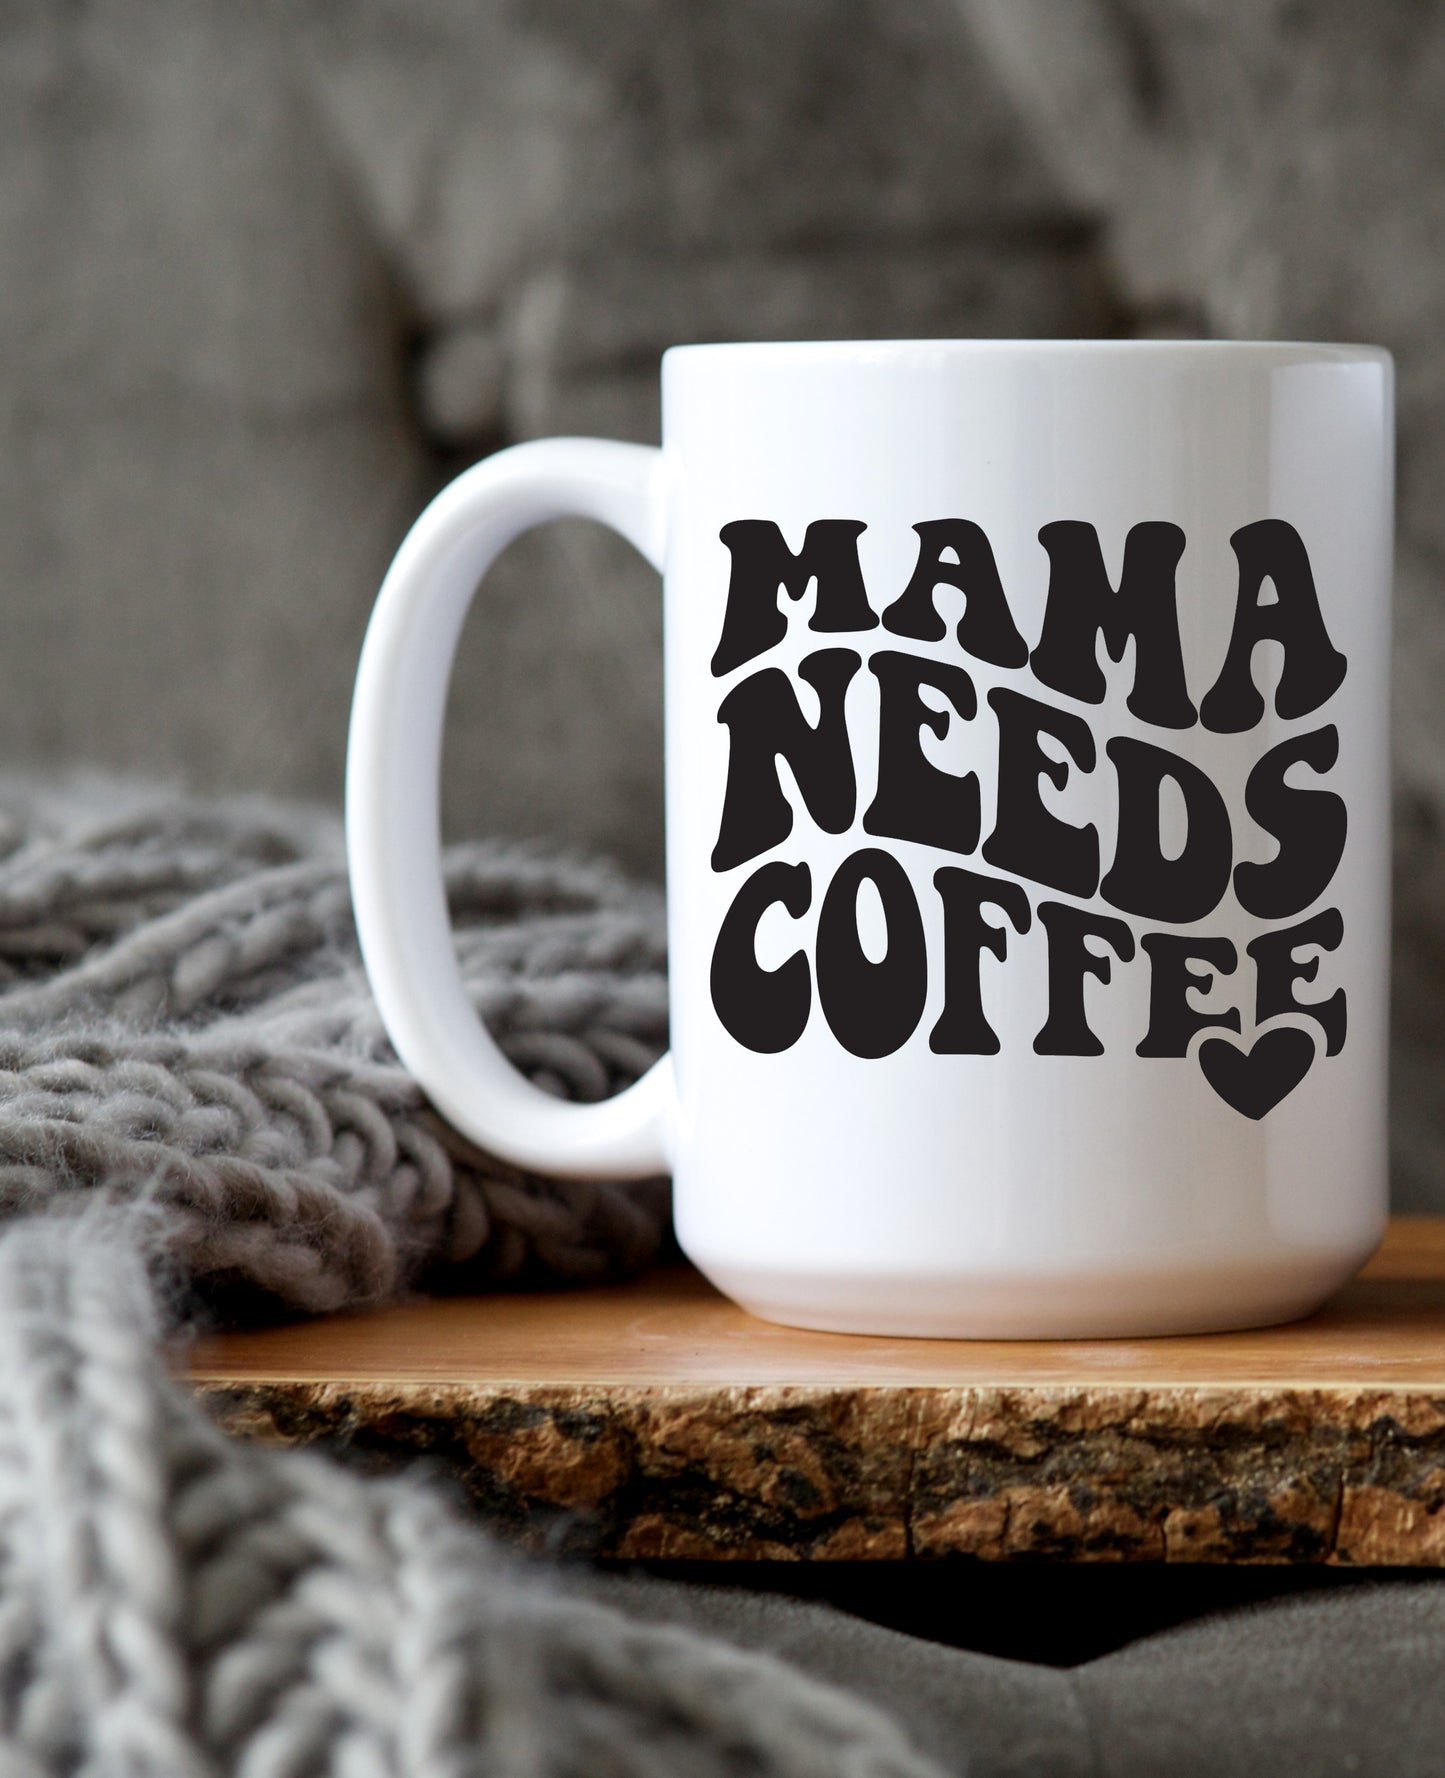 Maman a besoin d'une tasse à café